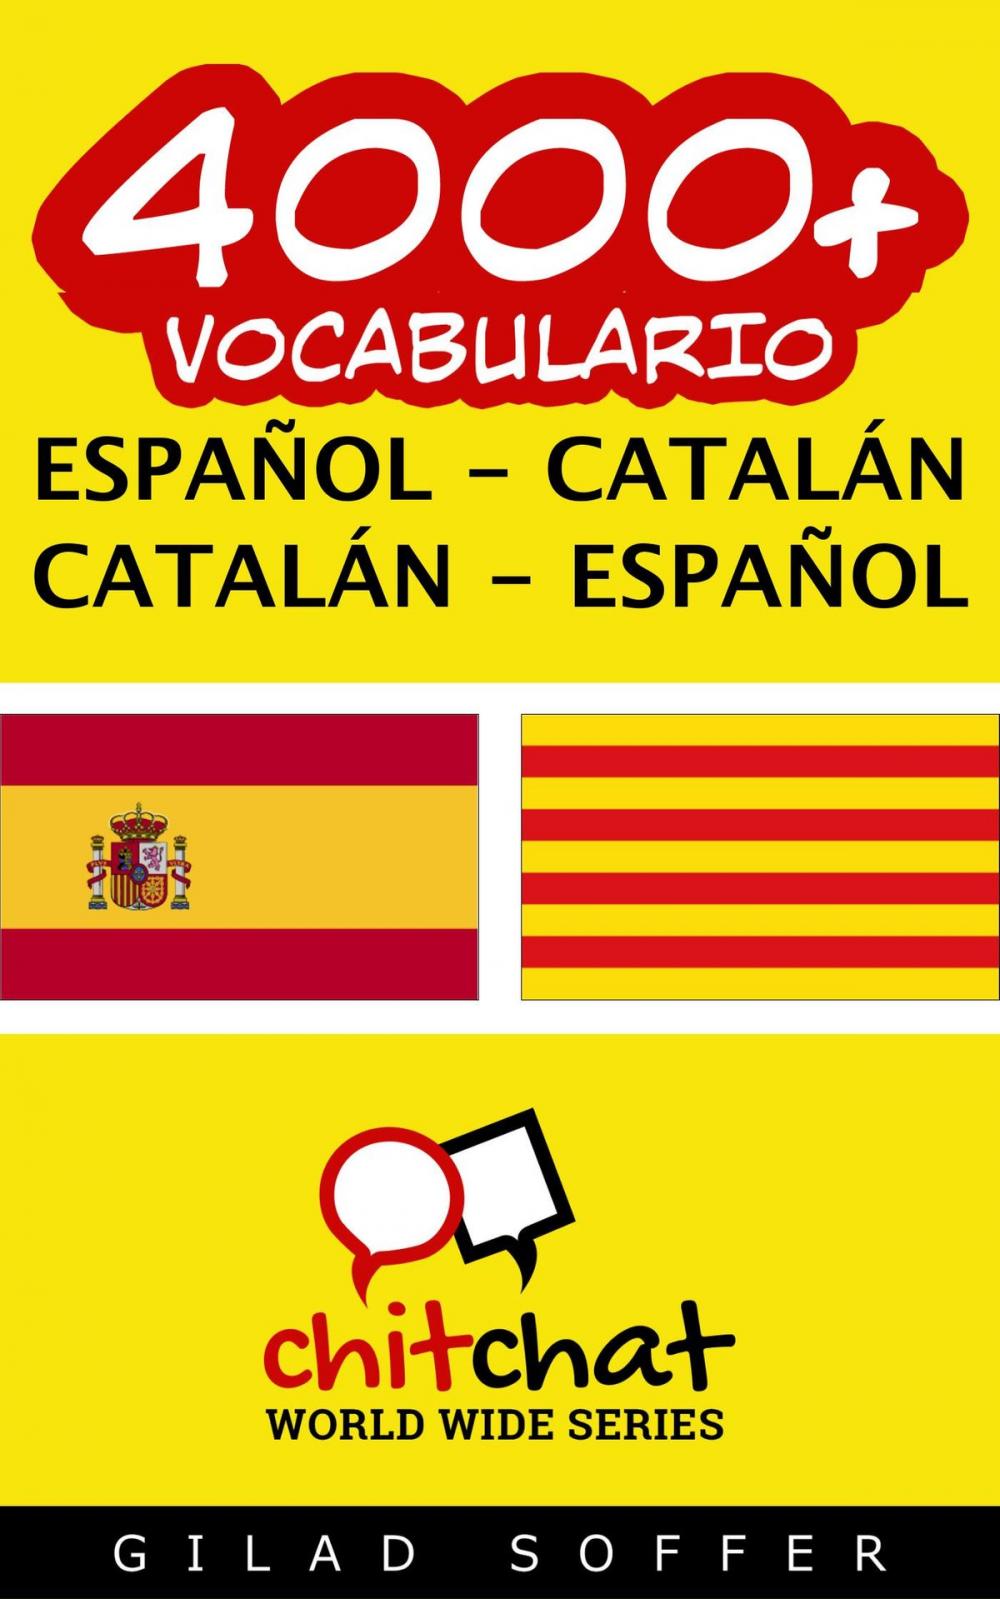 Big bigCover of 4000+ vocabulario español - catalán